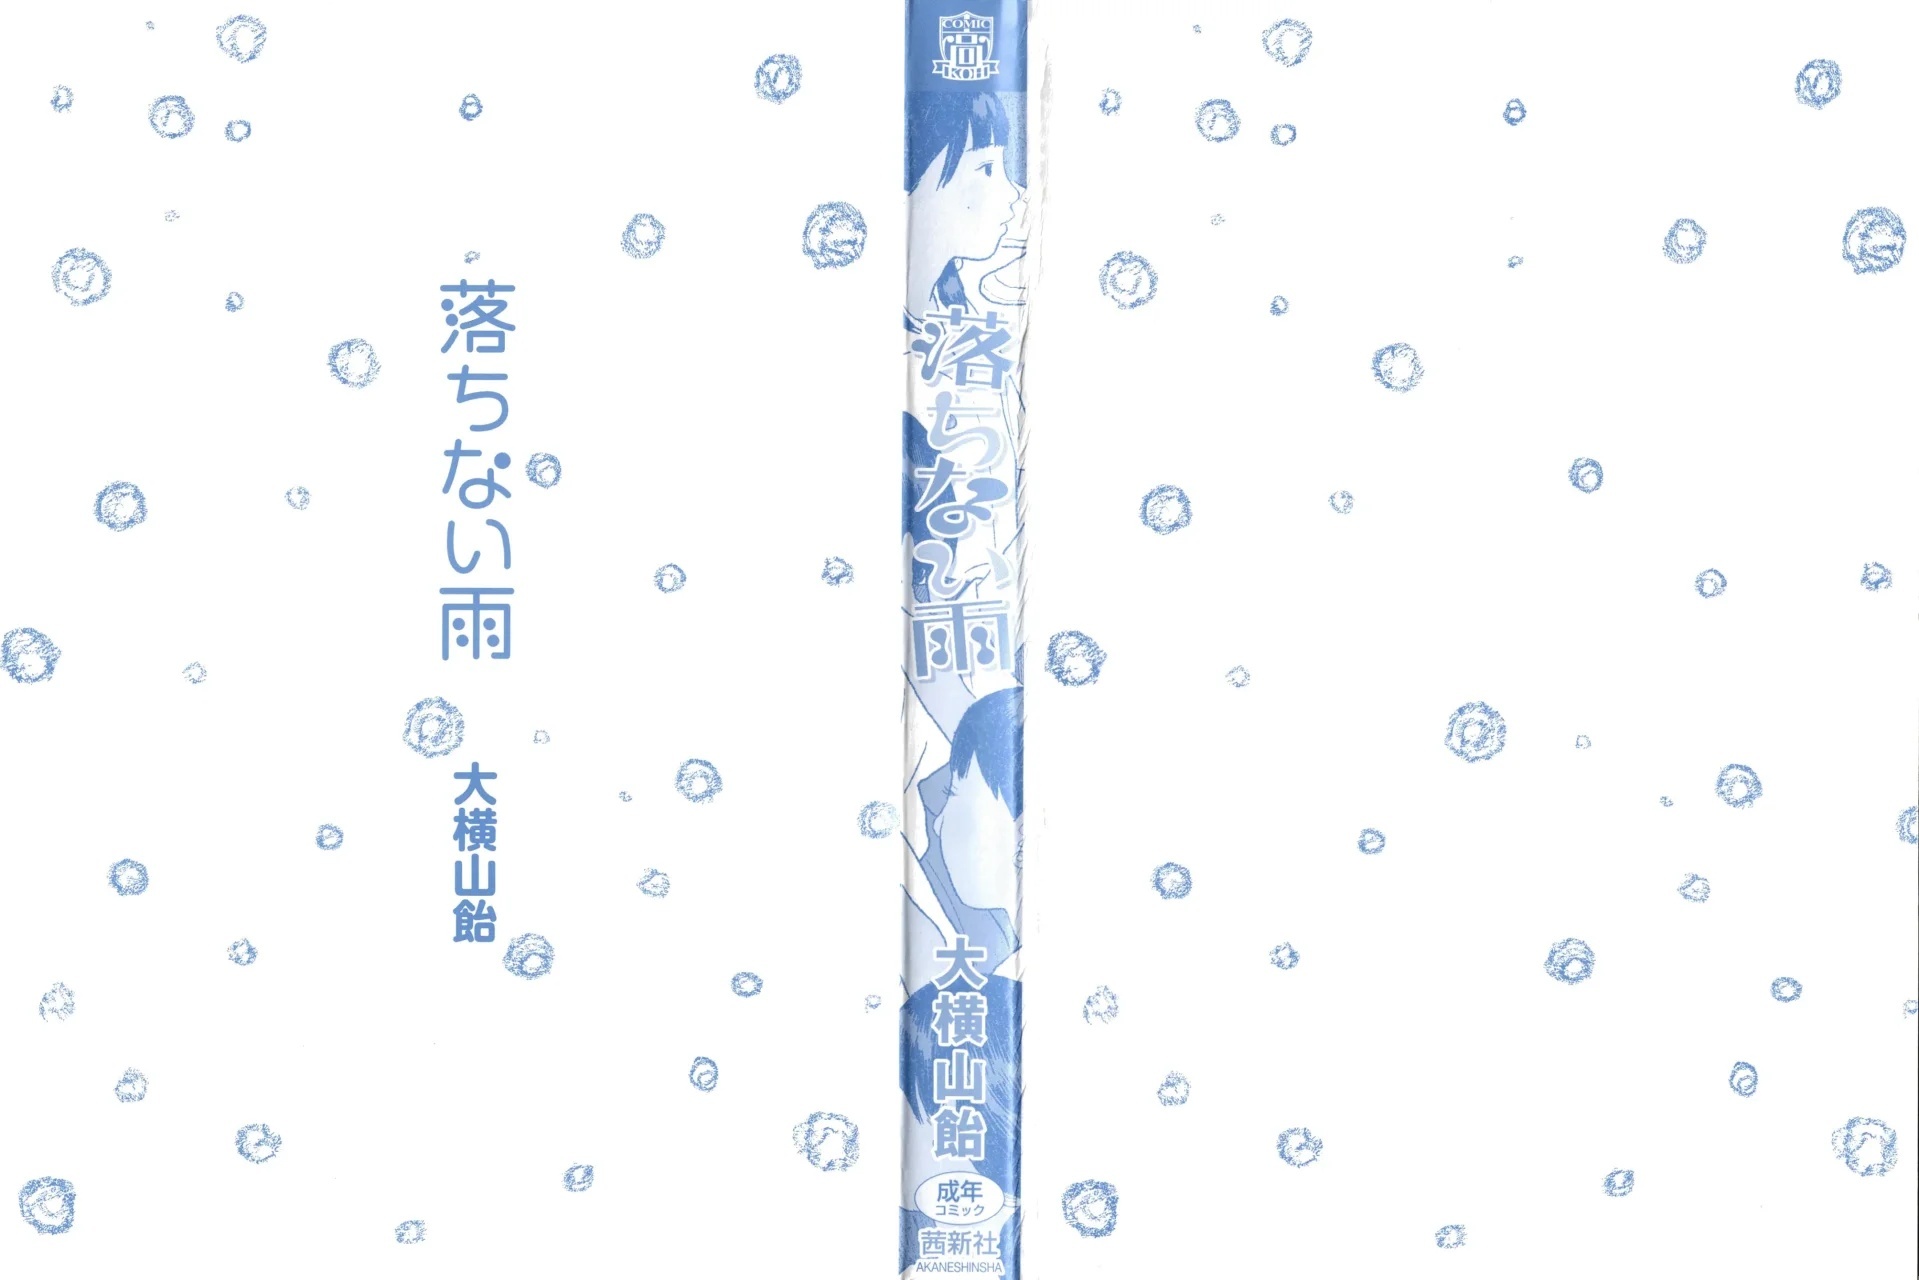 01 - Ochinai Ame Unfalling Rain - 2